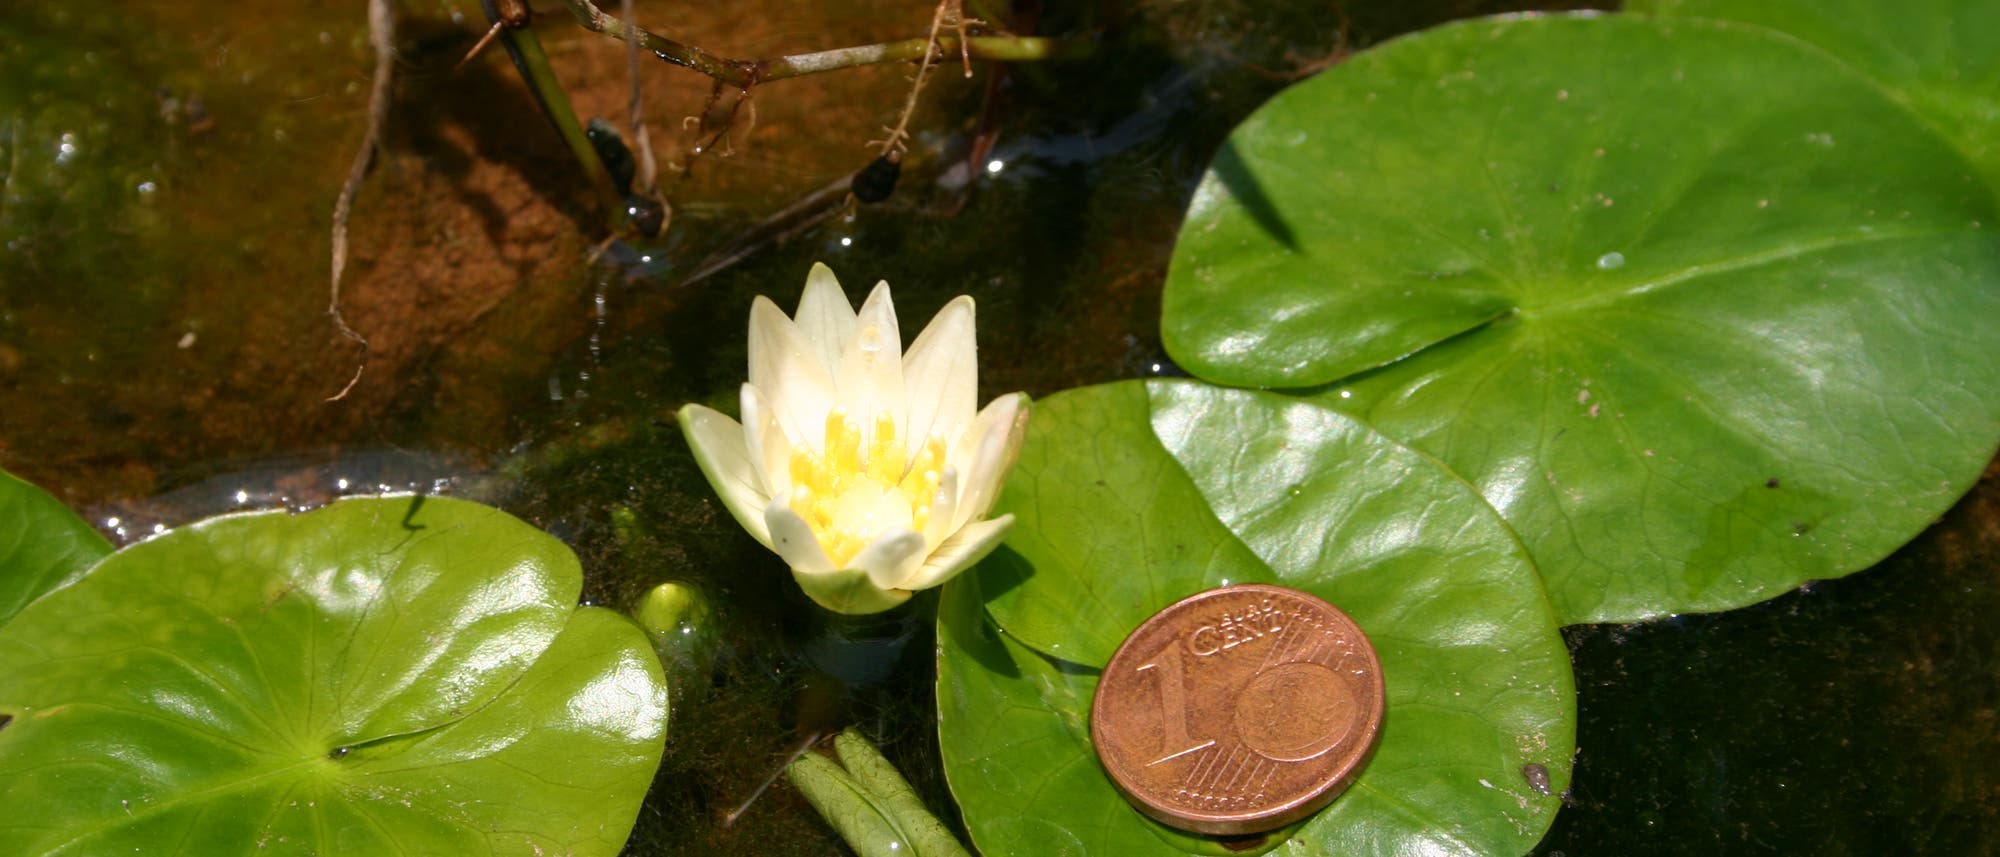 Die kleinste Seerose der Welt ist so groß wie eine Ein-Cent-Münze.